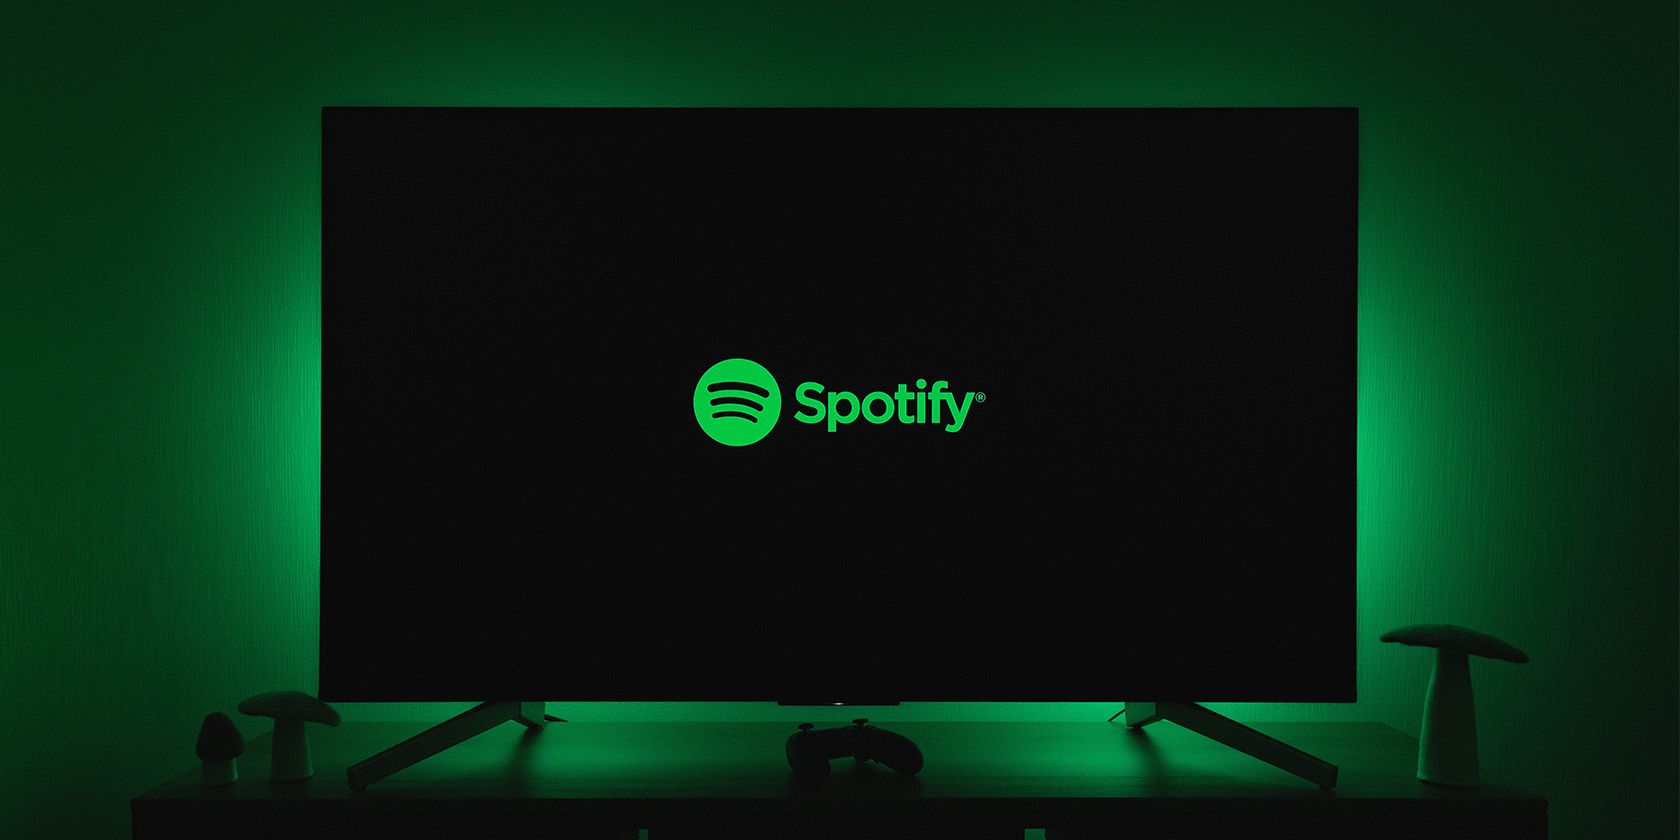 Spotify playing on a flatscreen TV